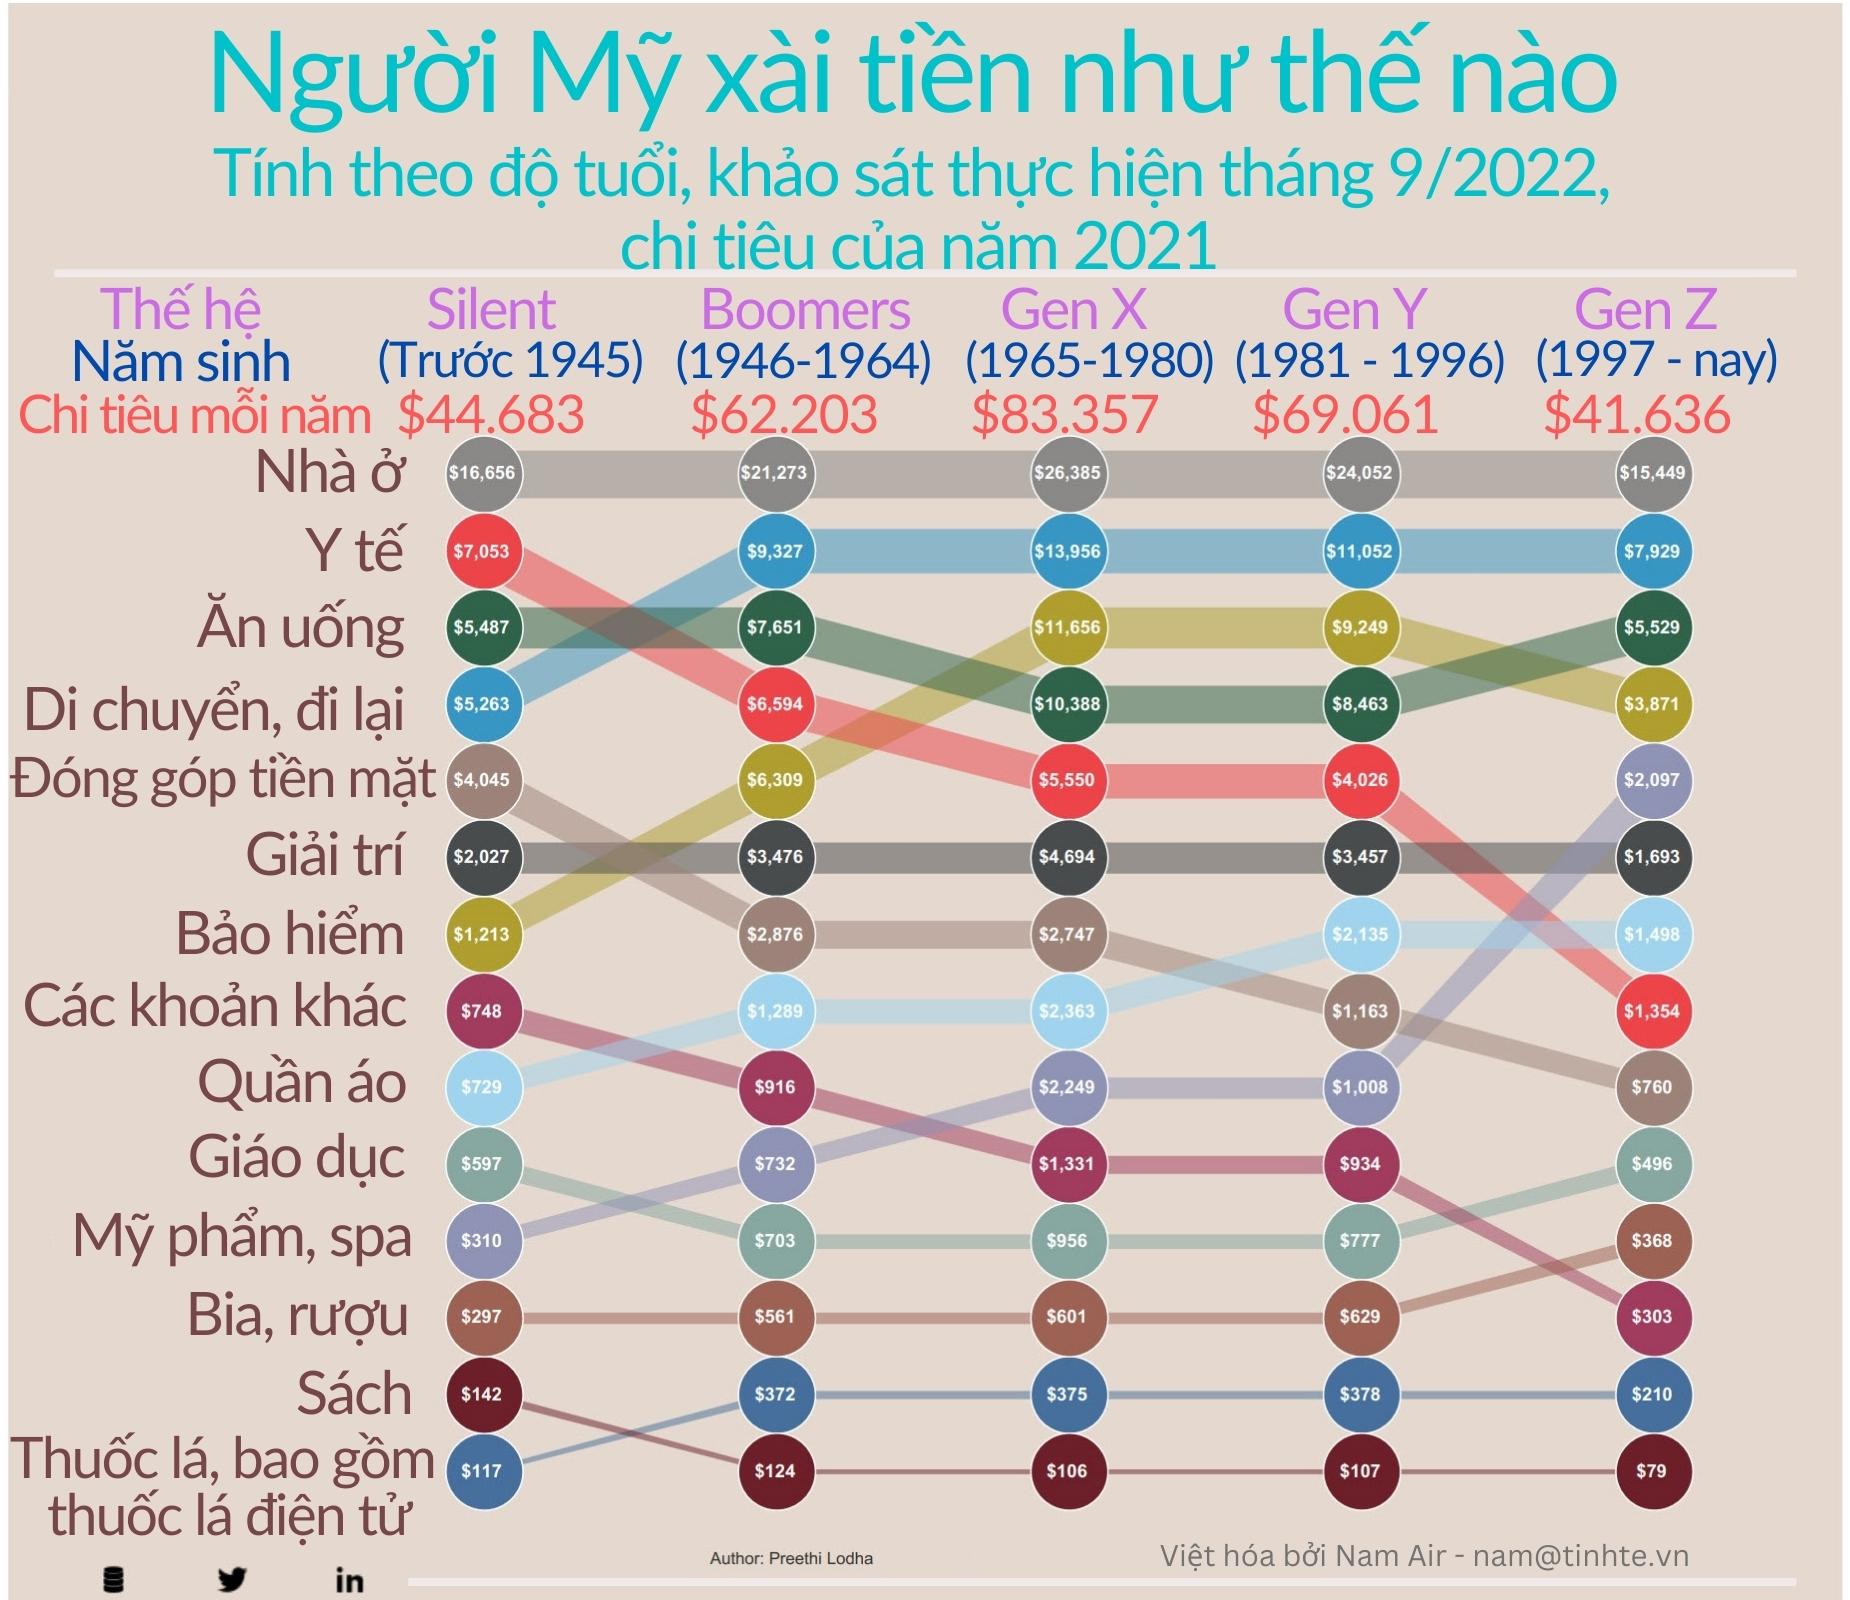 tinhte-infographic-nguoi-my-xai-tien.jpg